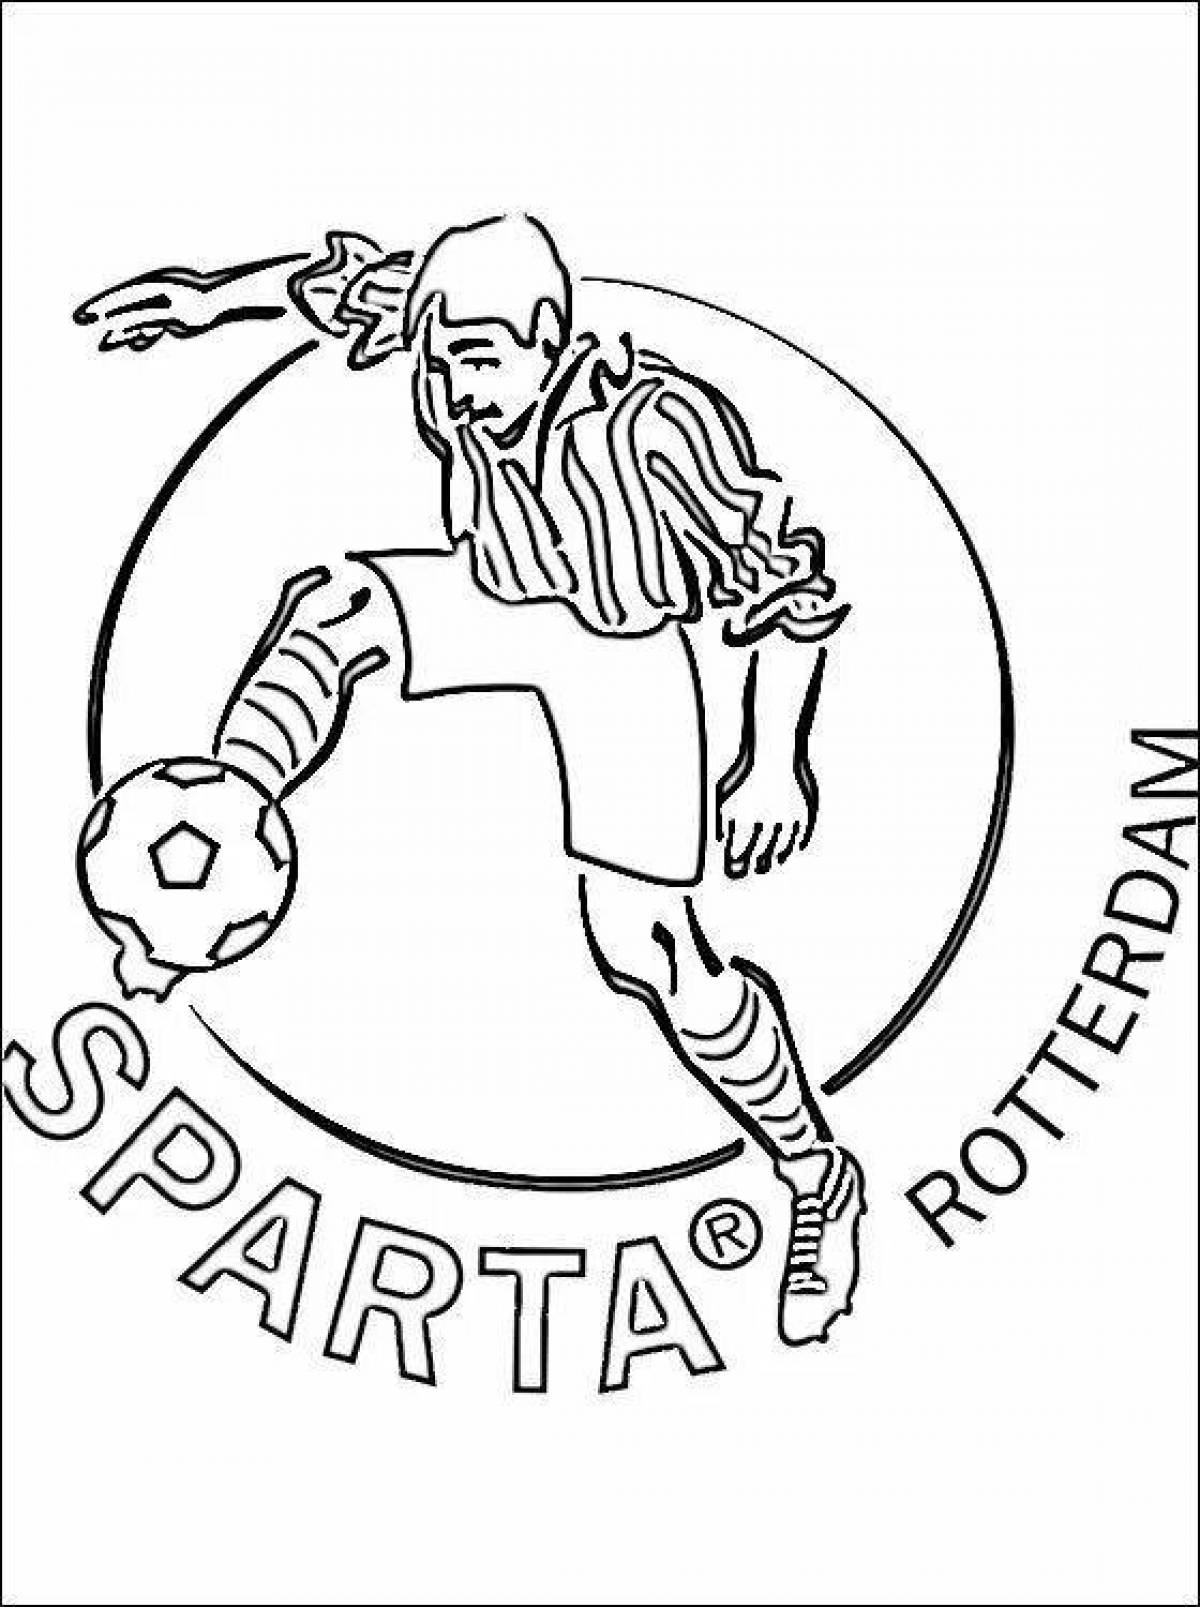 Coloring book Joyful Spartacus